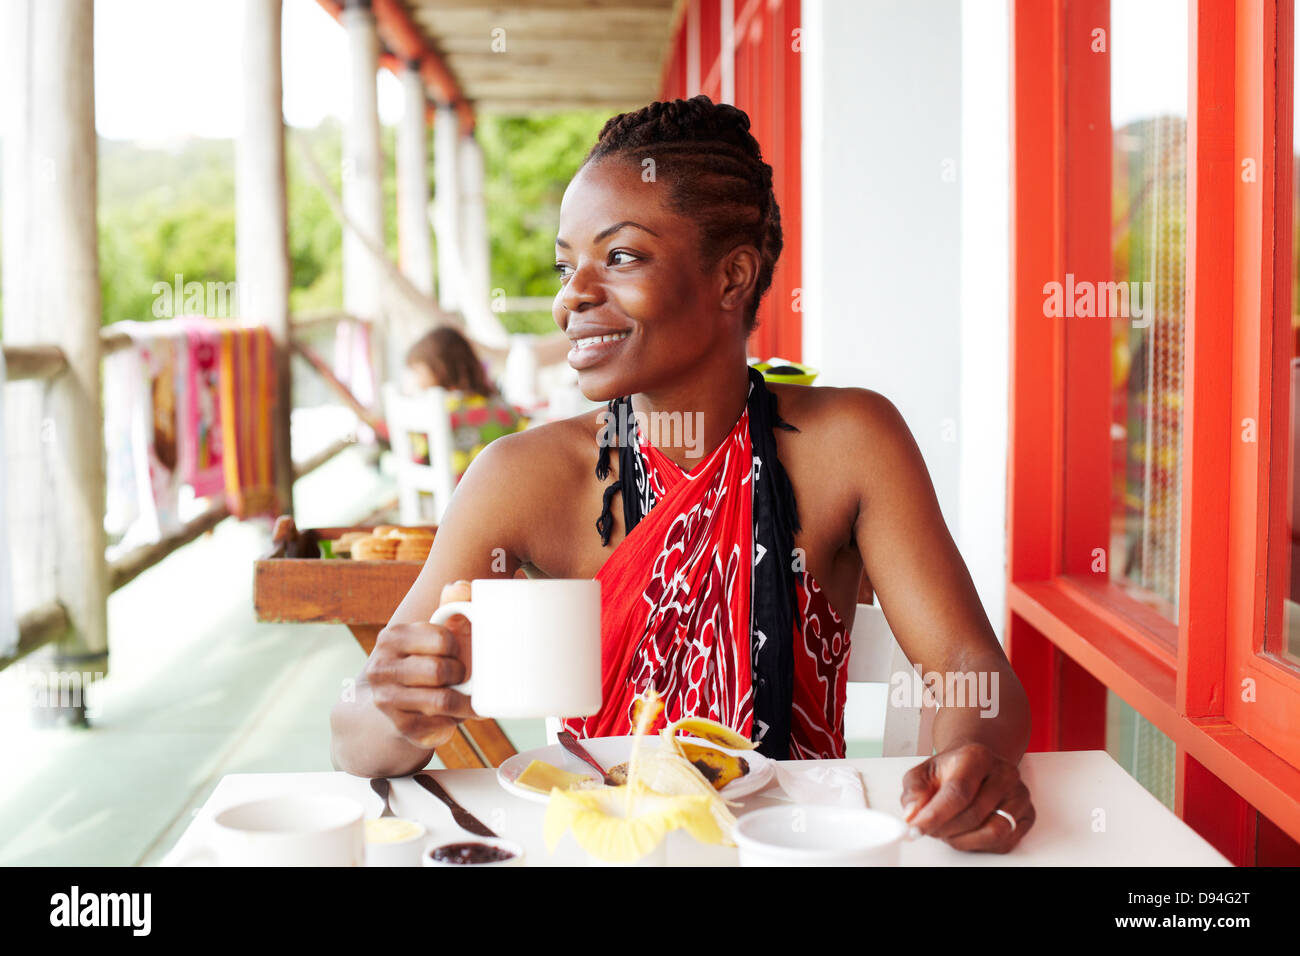 Black woman smiling at le déjeuner Banque D'Images